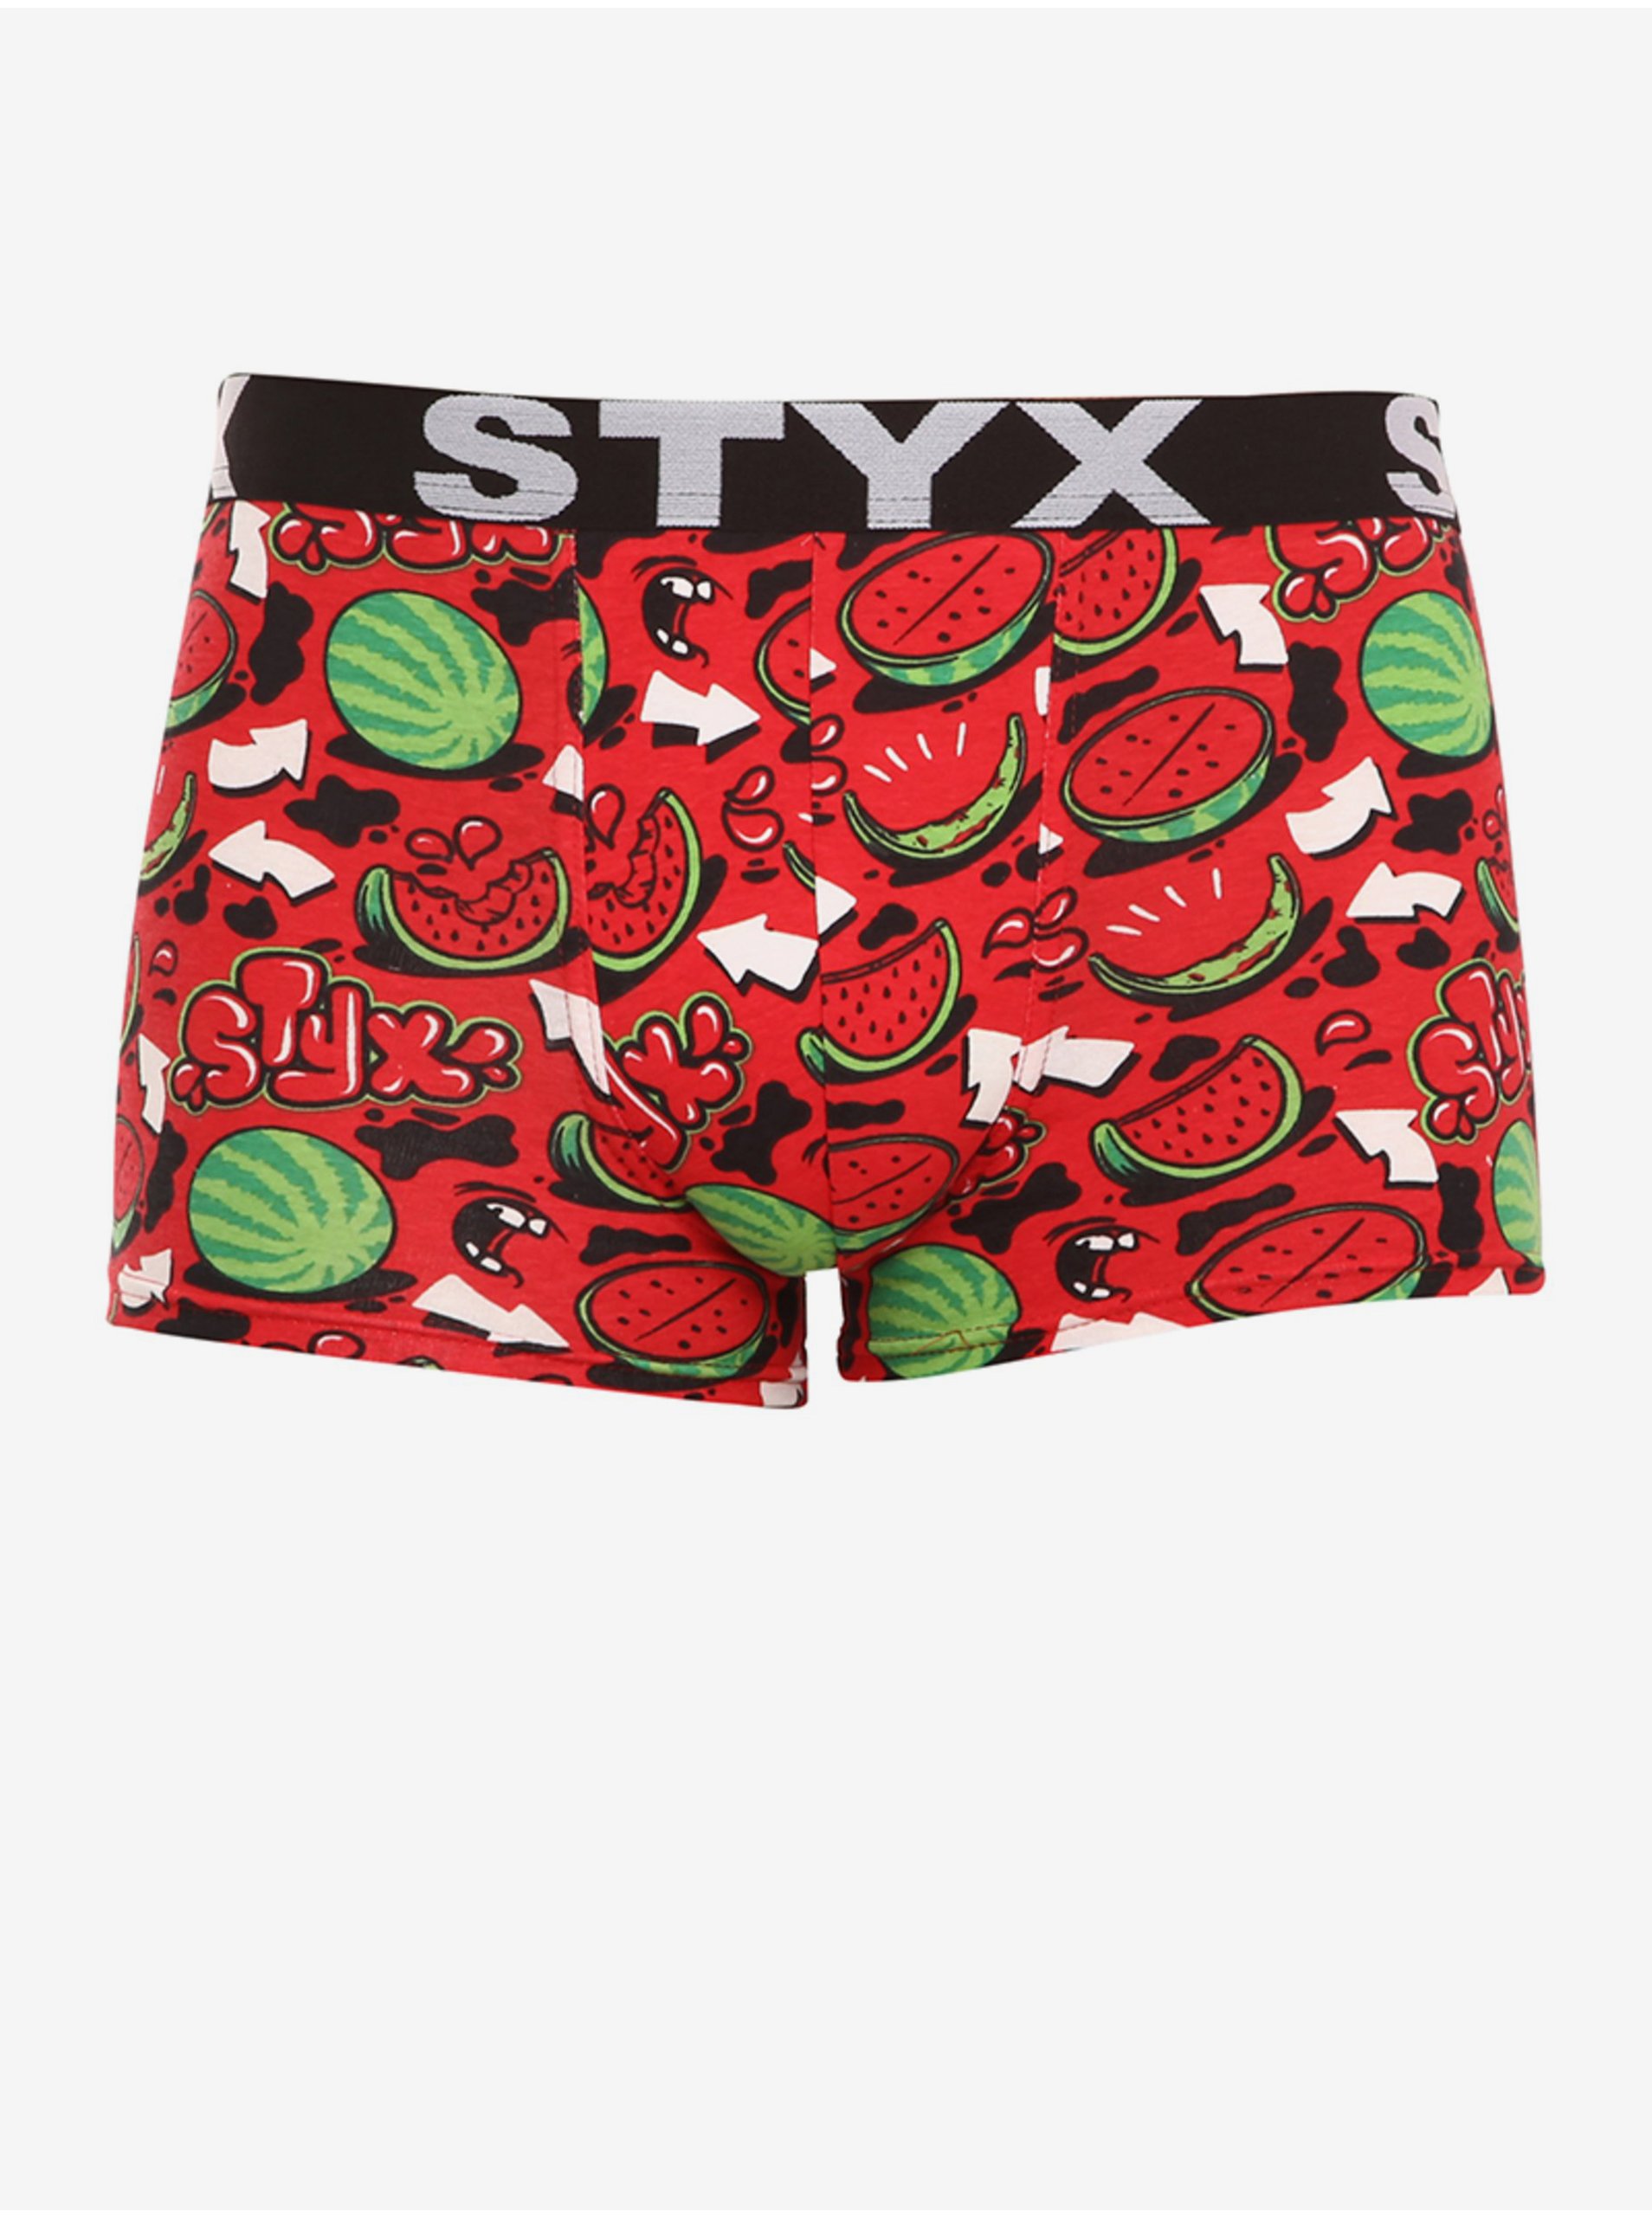 Lacno Boxerky pre mužov STYX - červená, zelená, čierna